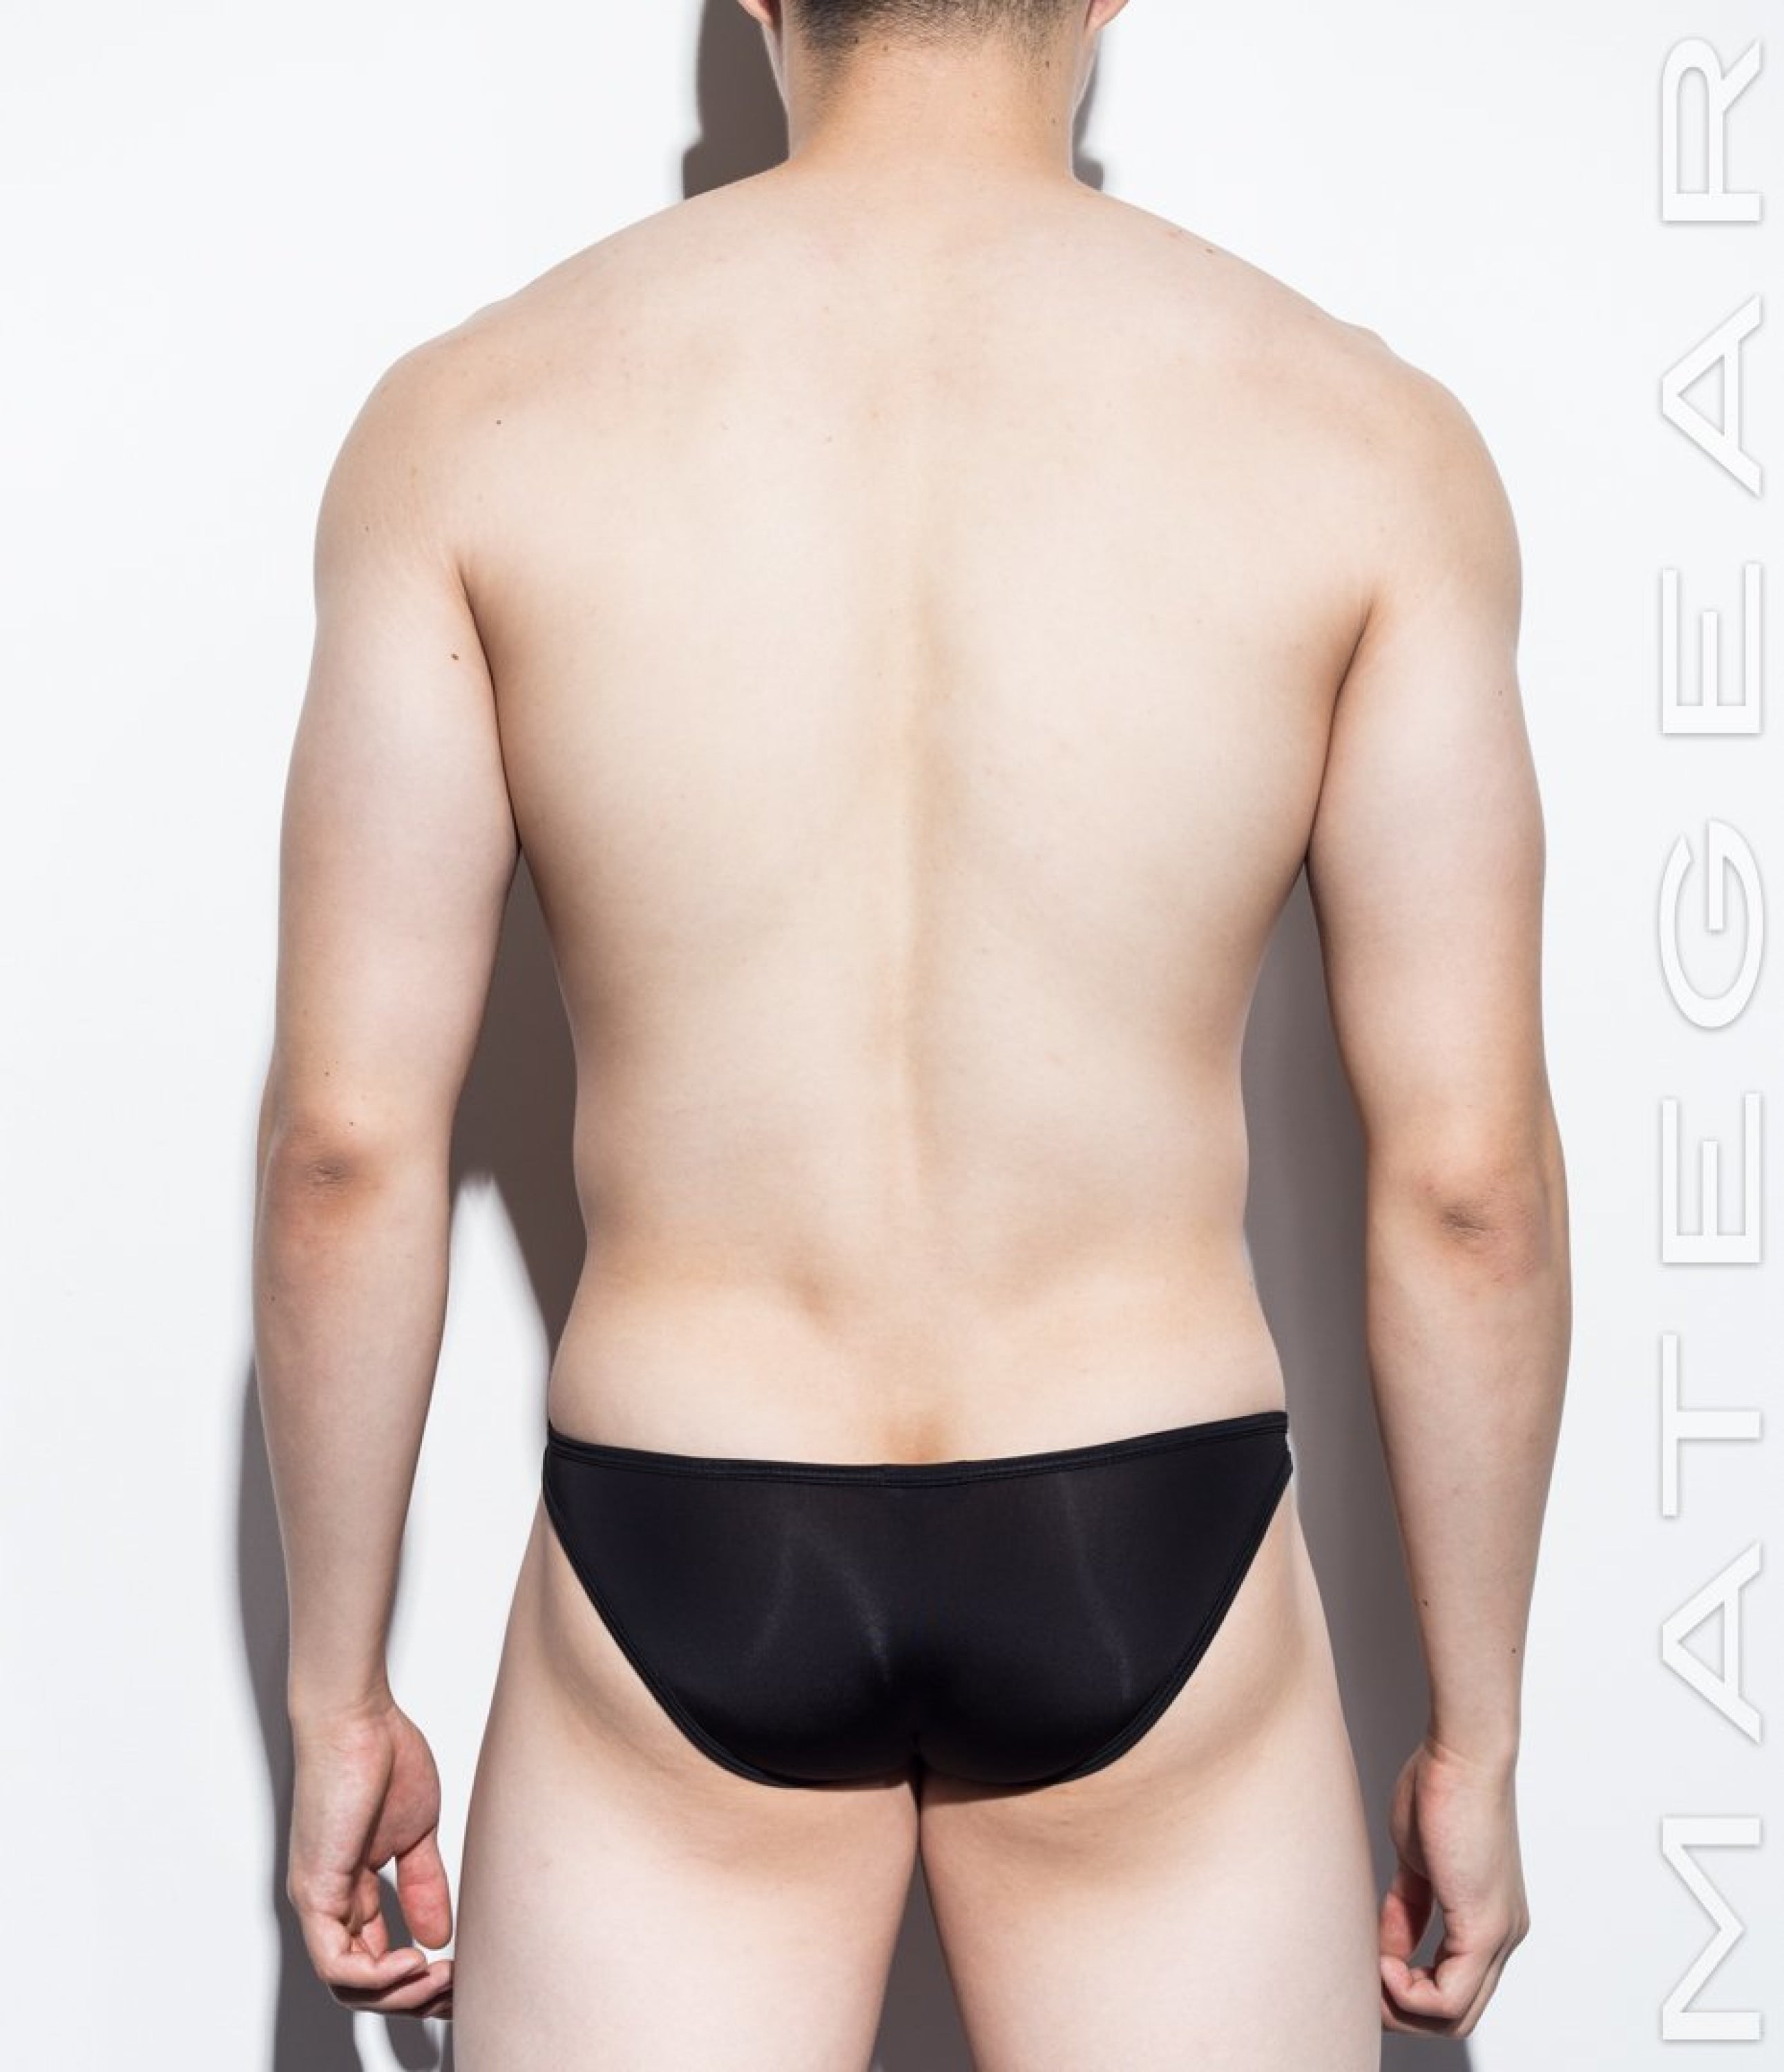 2pc/Pack] Sexy Men's Underwear Ultra Bikini Briefs - Nan Song (V-Fron –  MATEGEAR - Sexy Men's Swimwear, Underwear, Sportswear and Loungewear